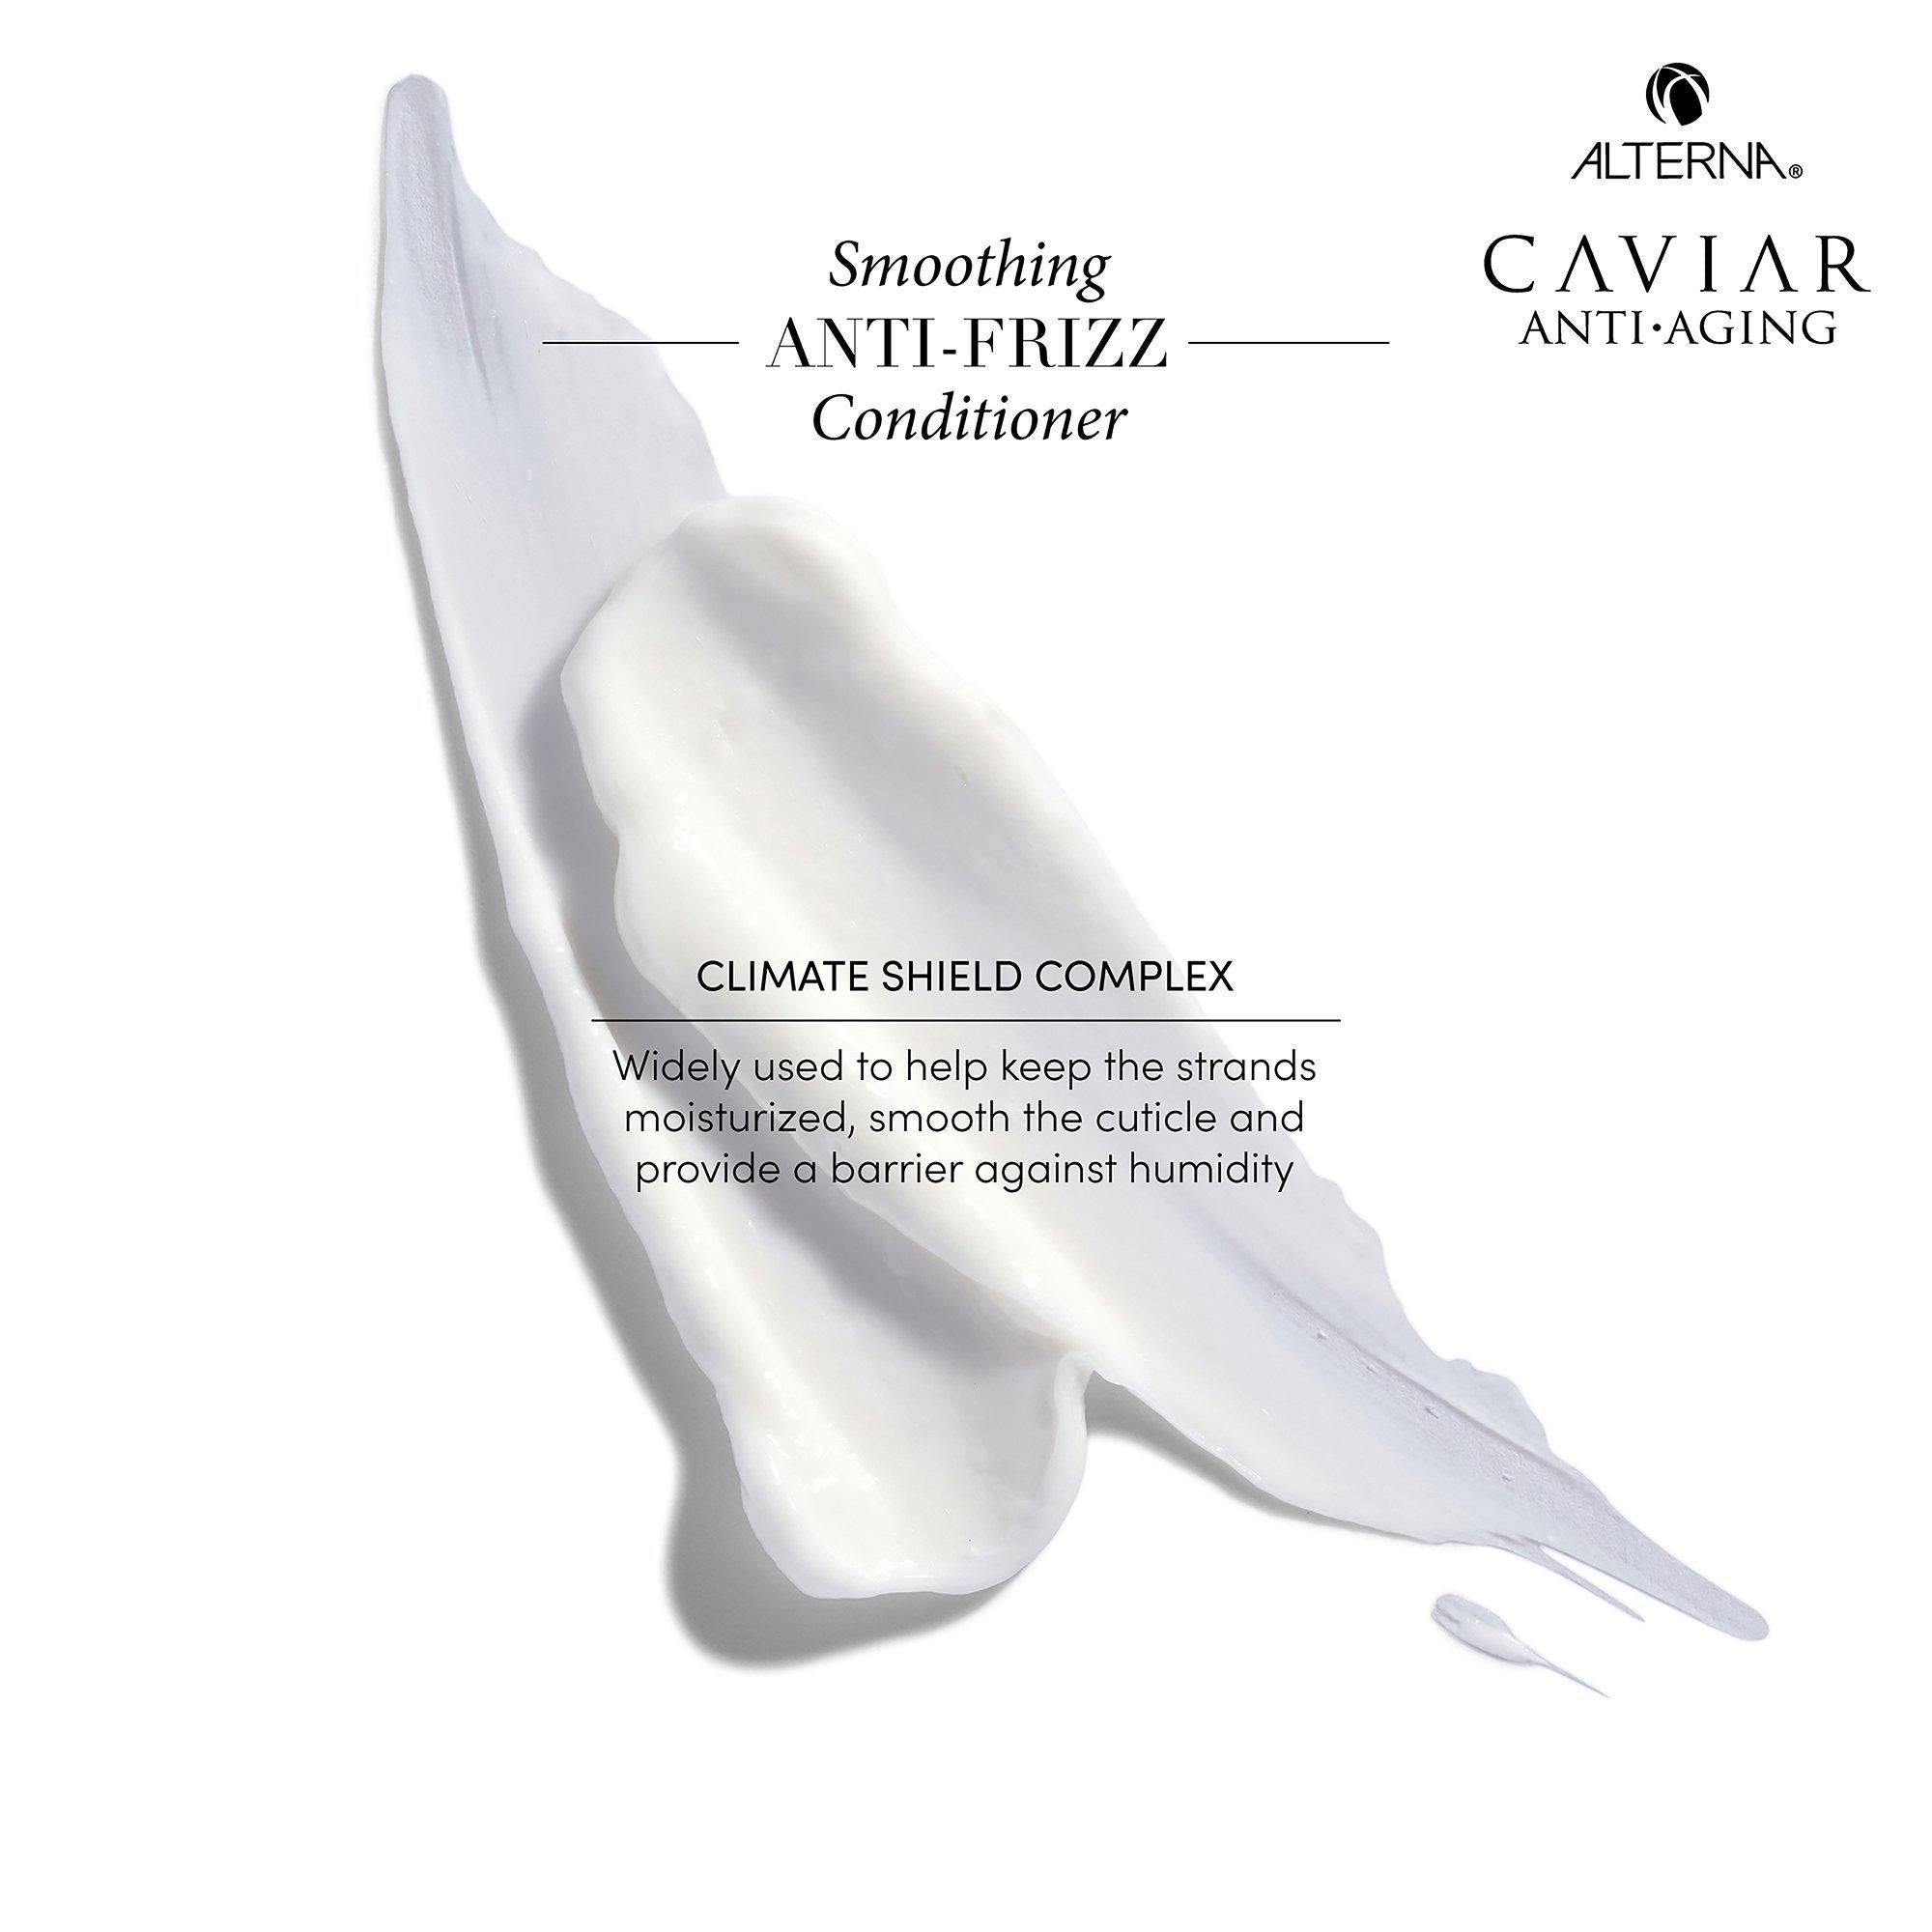 Alterna Caviar Smoothing Anti-Frizz Shampoo & Conditioner Duo -33oz ($162 Value) / 33.OZ